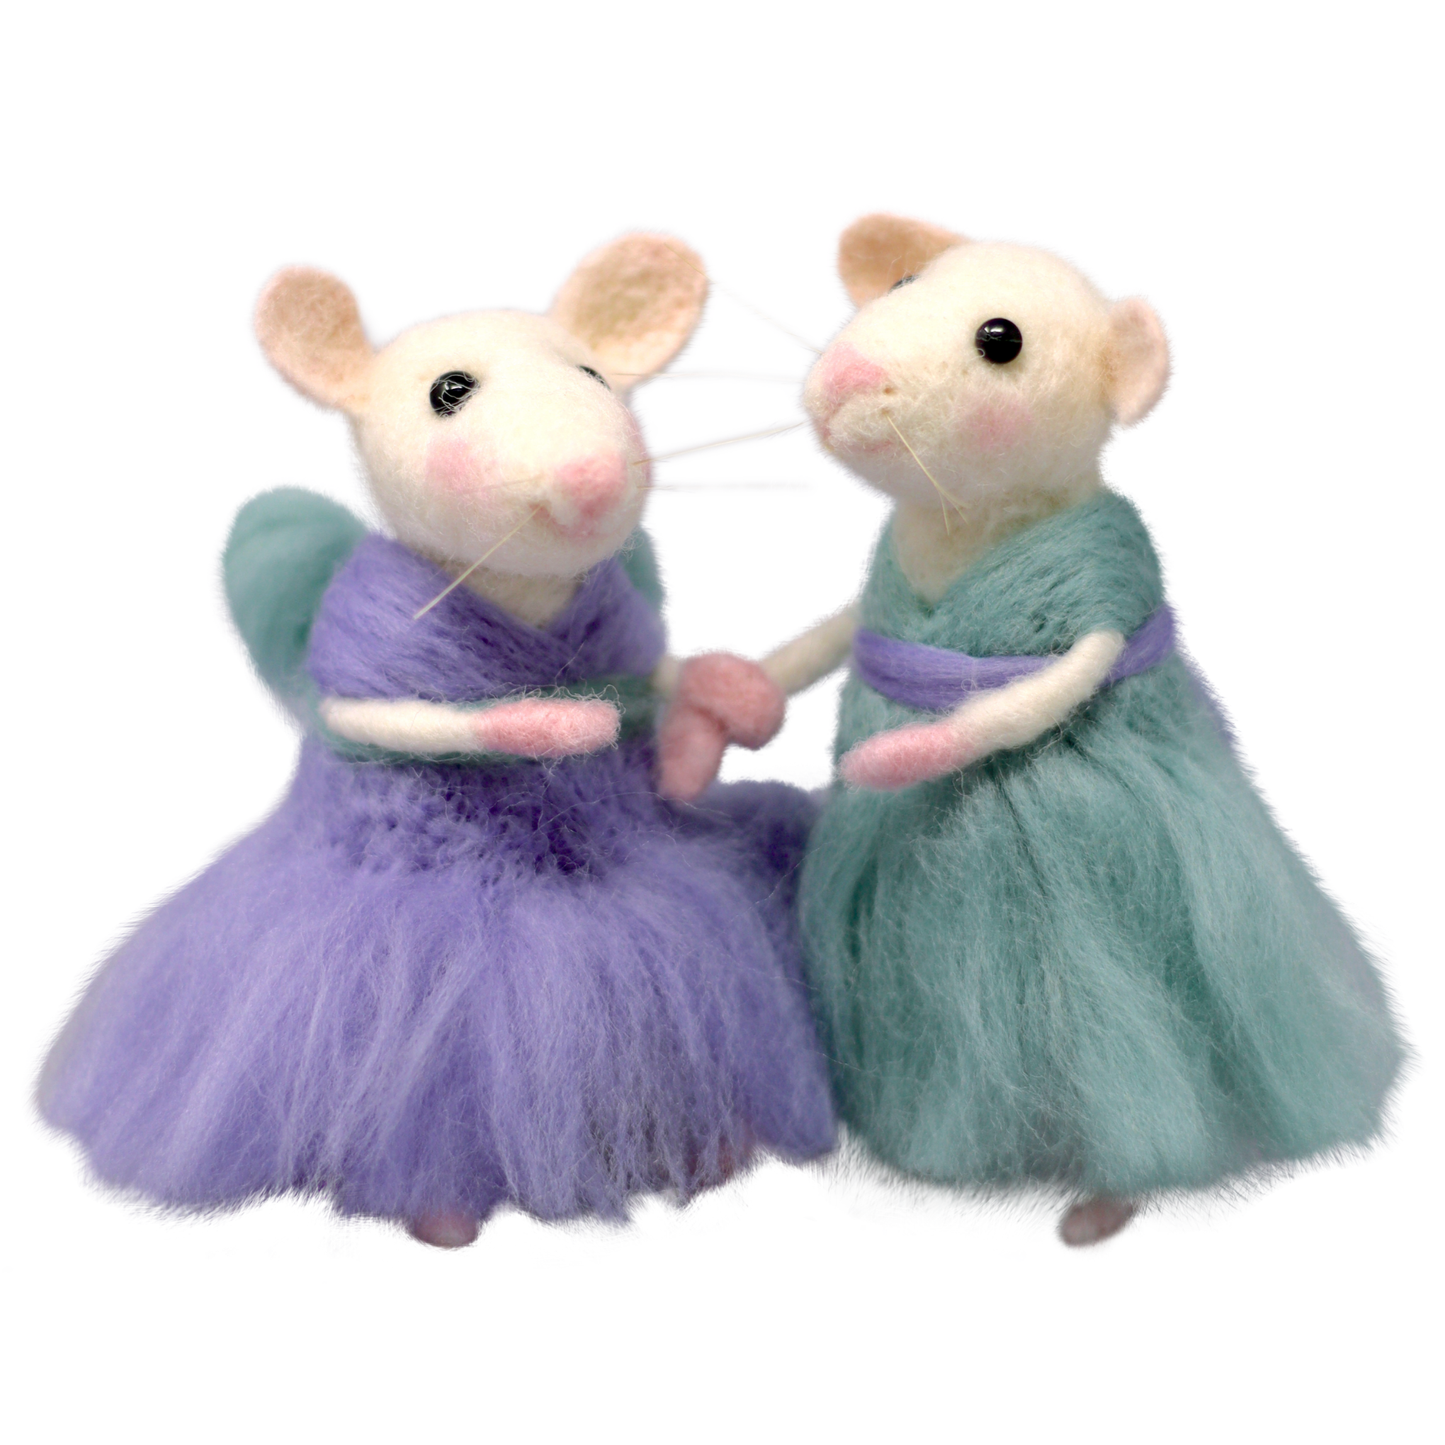 Poppy & Daisy Mice Needle Felting Kit